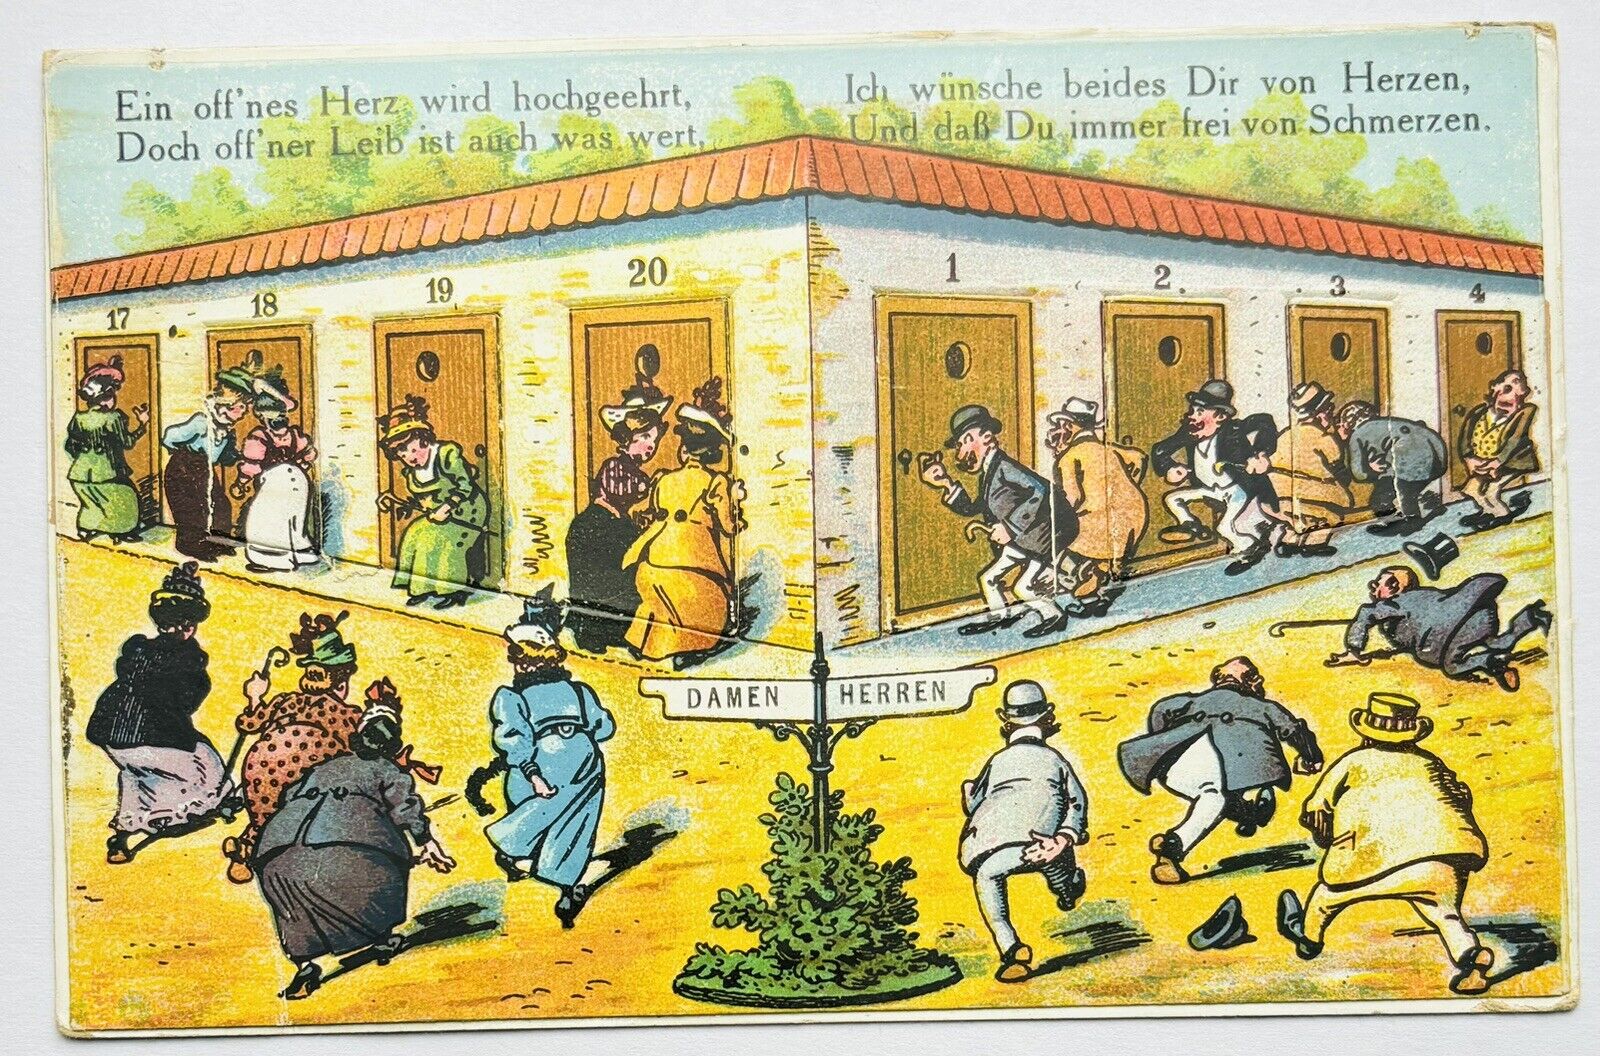 Rare Early 1900’s German Postcard With Men’s & Women’s Bathrooms & Opening Doors